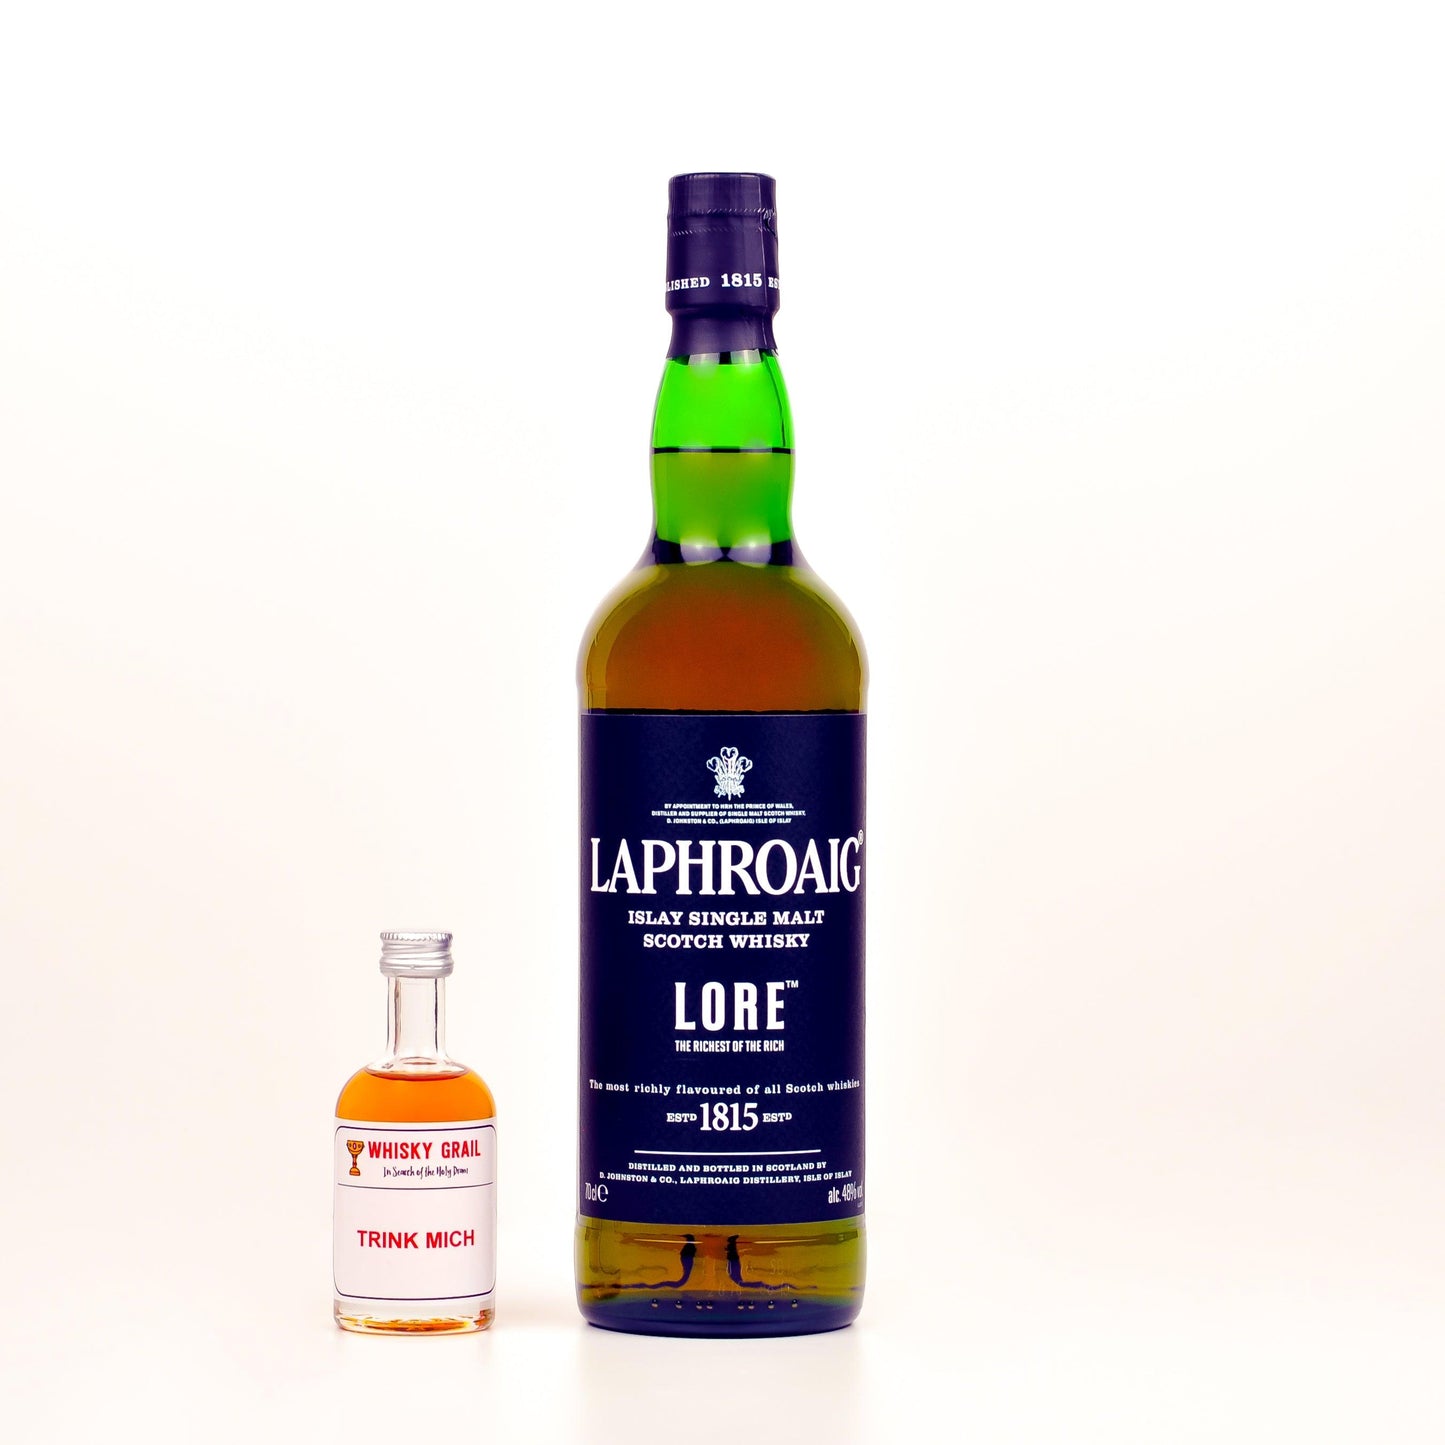 Laphroaig Whisky Tasting Set - Whisky Grail